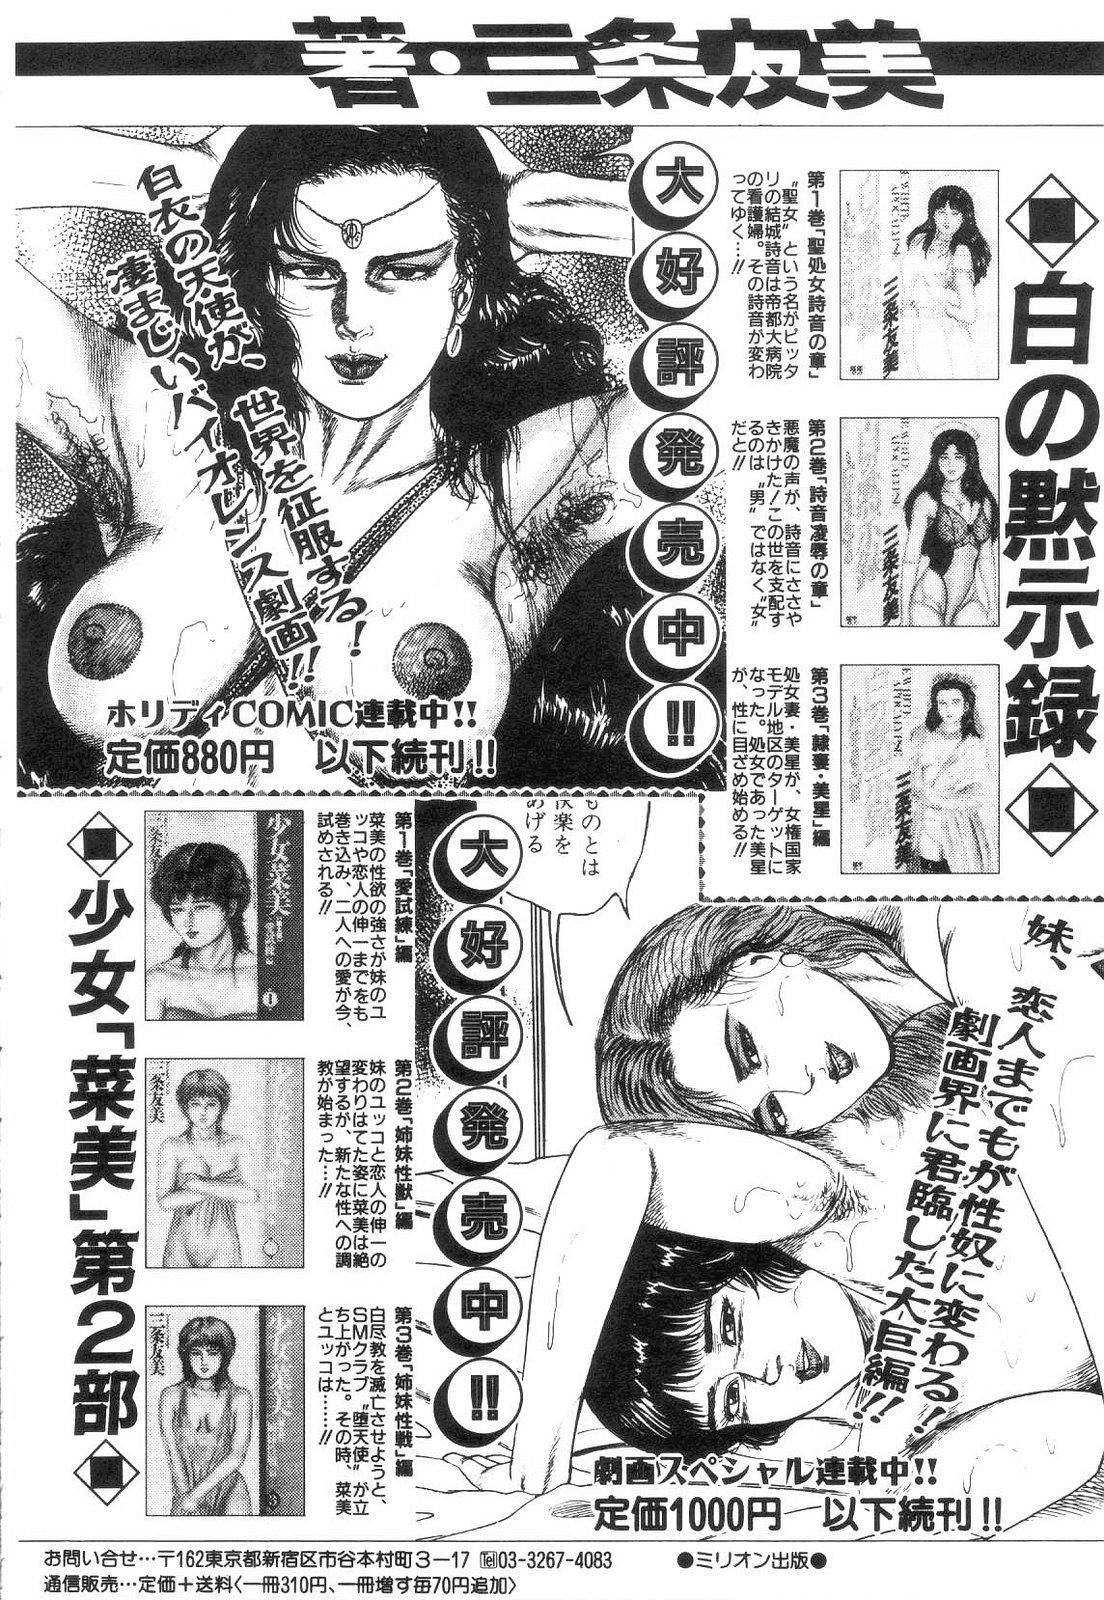 Shiro no Mokushiroku Vol. 4 - Bichiku Karen no Shou 199